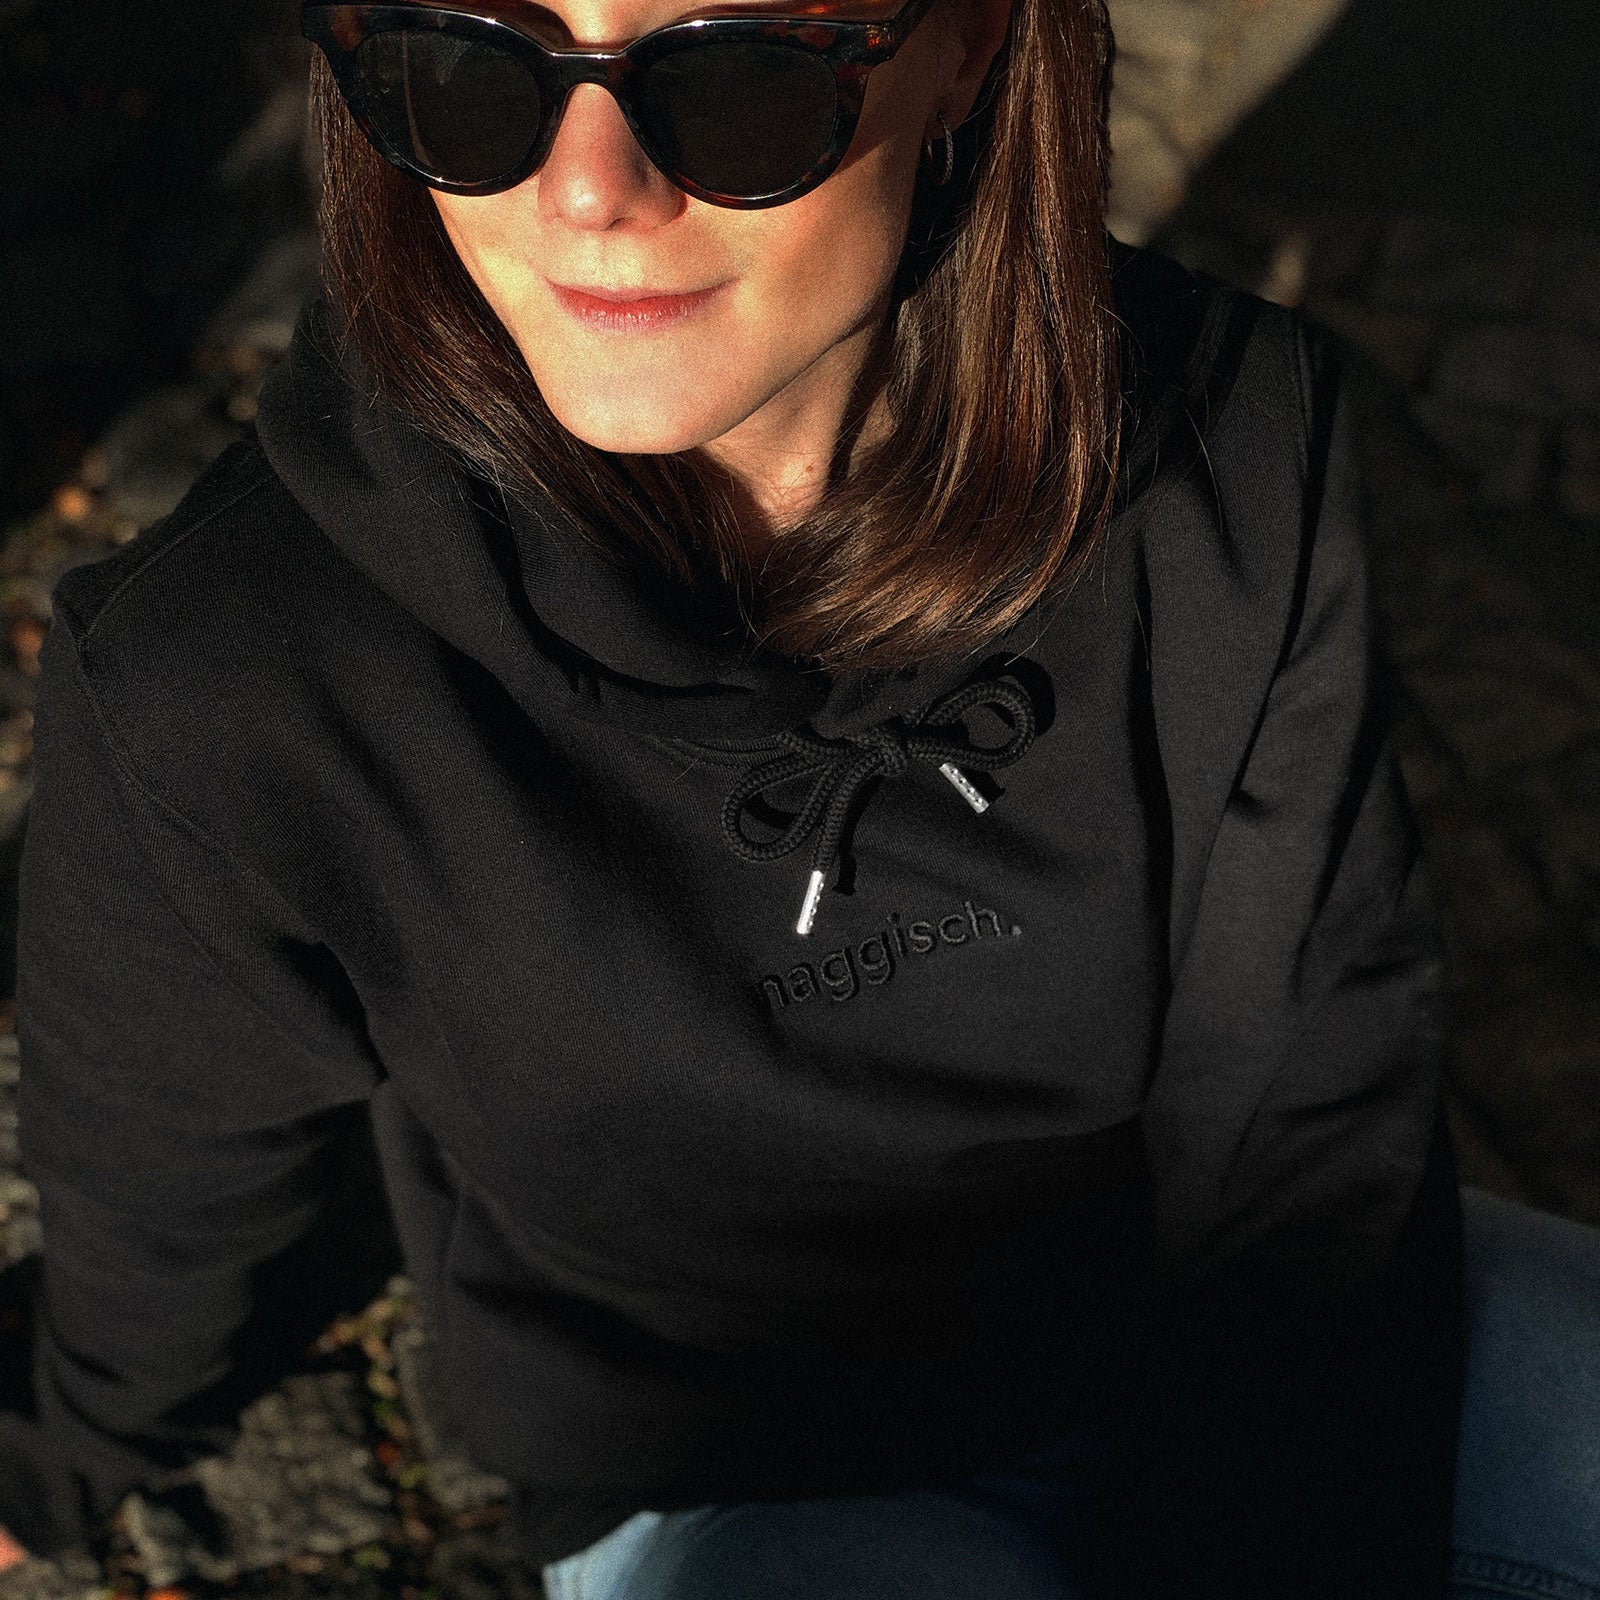 Frau mit schwarzem Kapuzenshirt schwarz bestickt mit naggisch